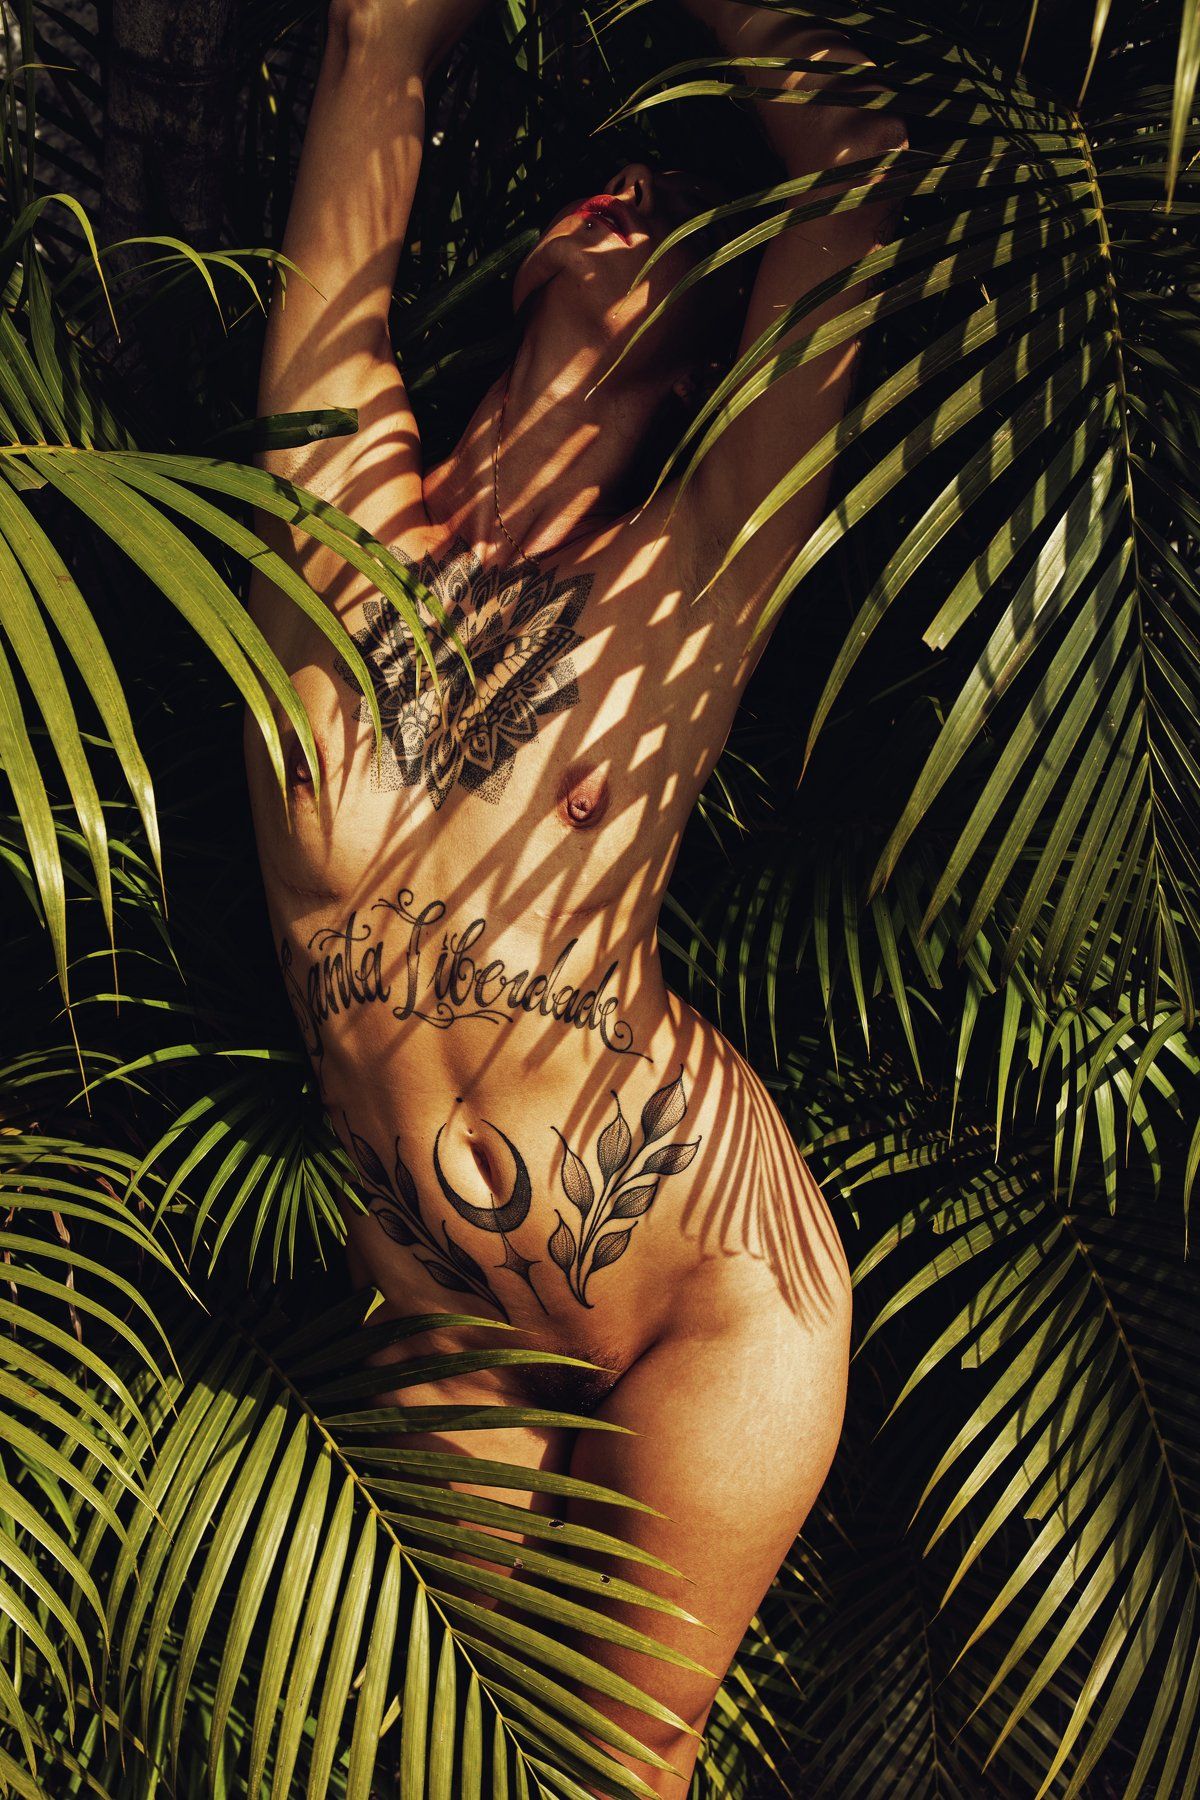 #nude #fineart #fineartnude #conceptual , Alexandre Langer